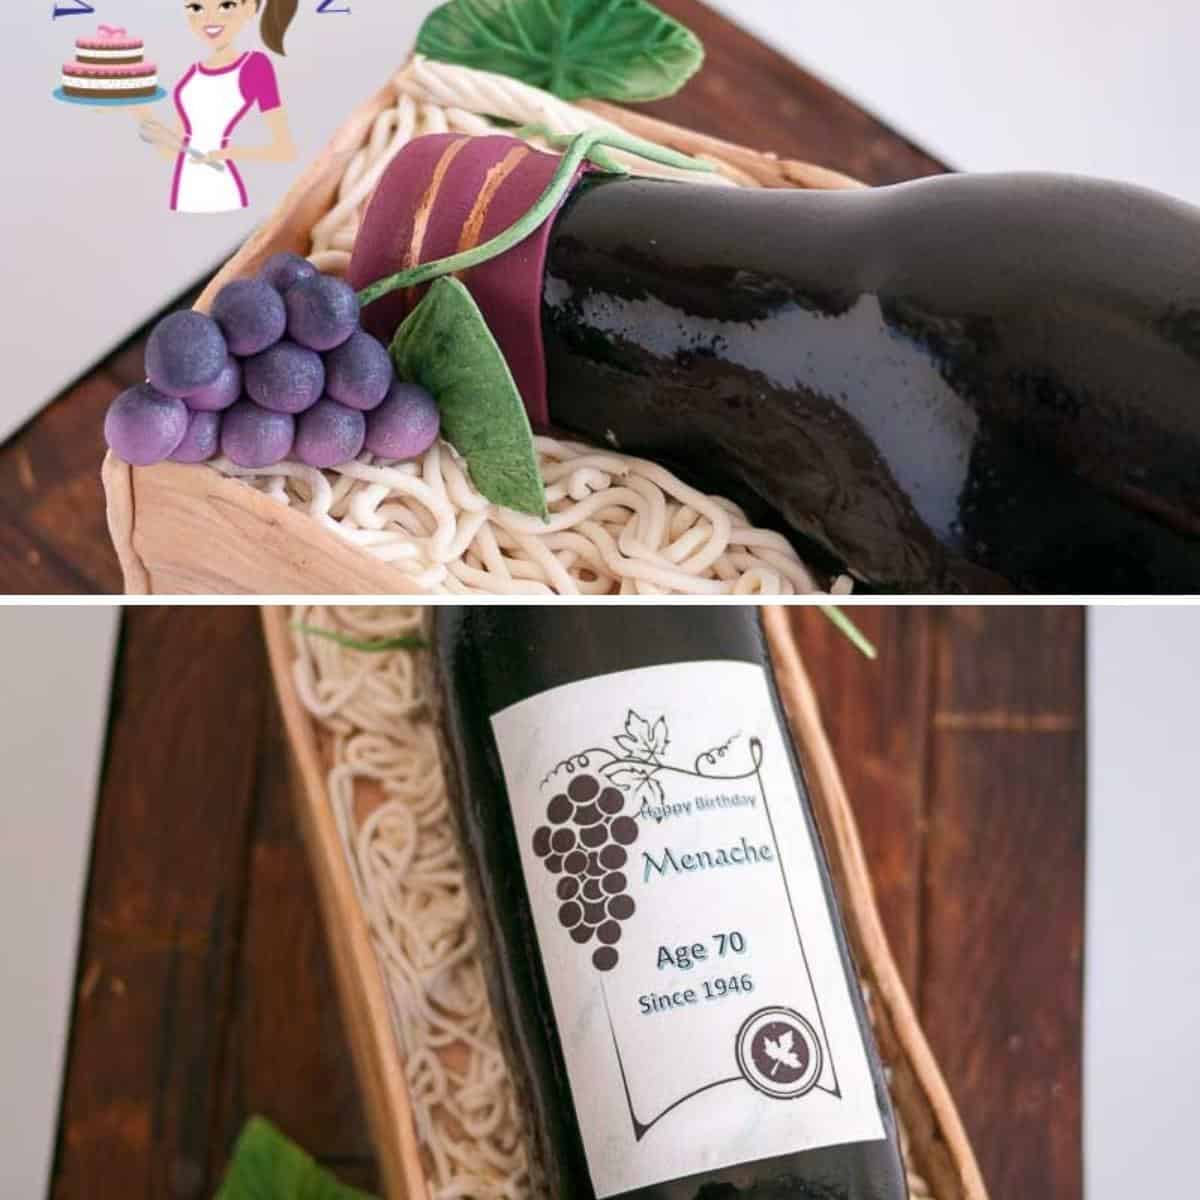 wine bottle cake on a cake board.